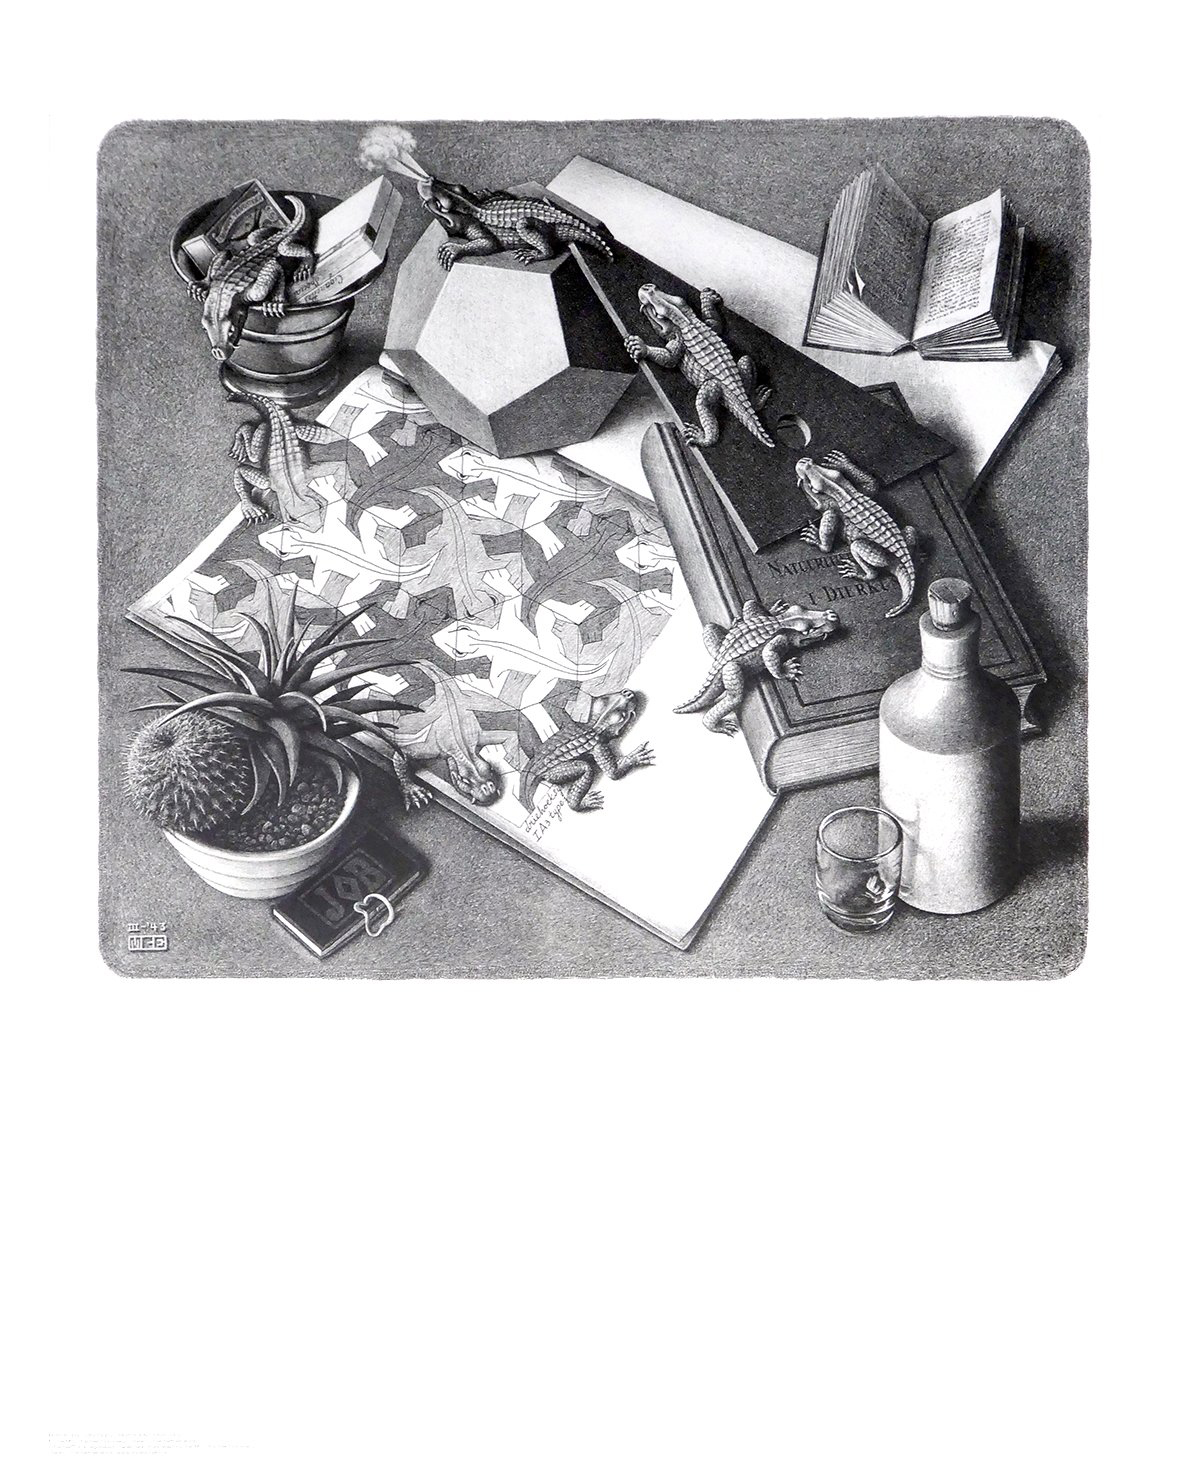 Titolo dell\'immagine : M.c. Escher - Reptilien  - (ESE-02)